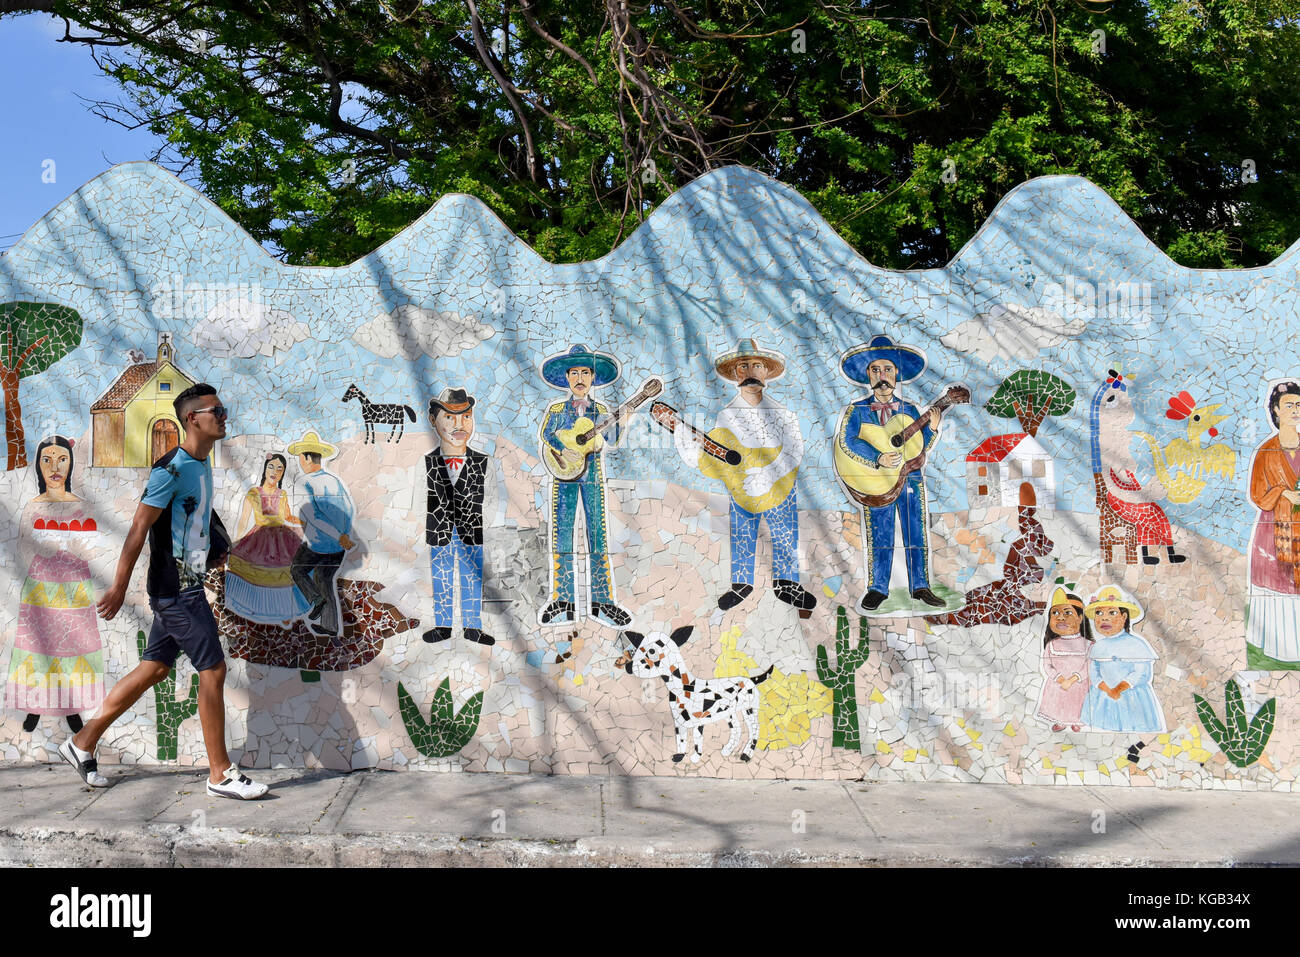 Peinture murale par Jose Fuster et collaborateurs à Jaimanitas, une région économiquement faible près de La Havane Cuba qui a été transformé en un quartier artistique Banque D'Images